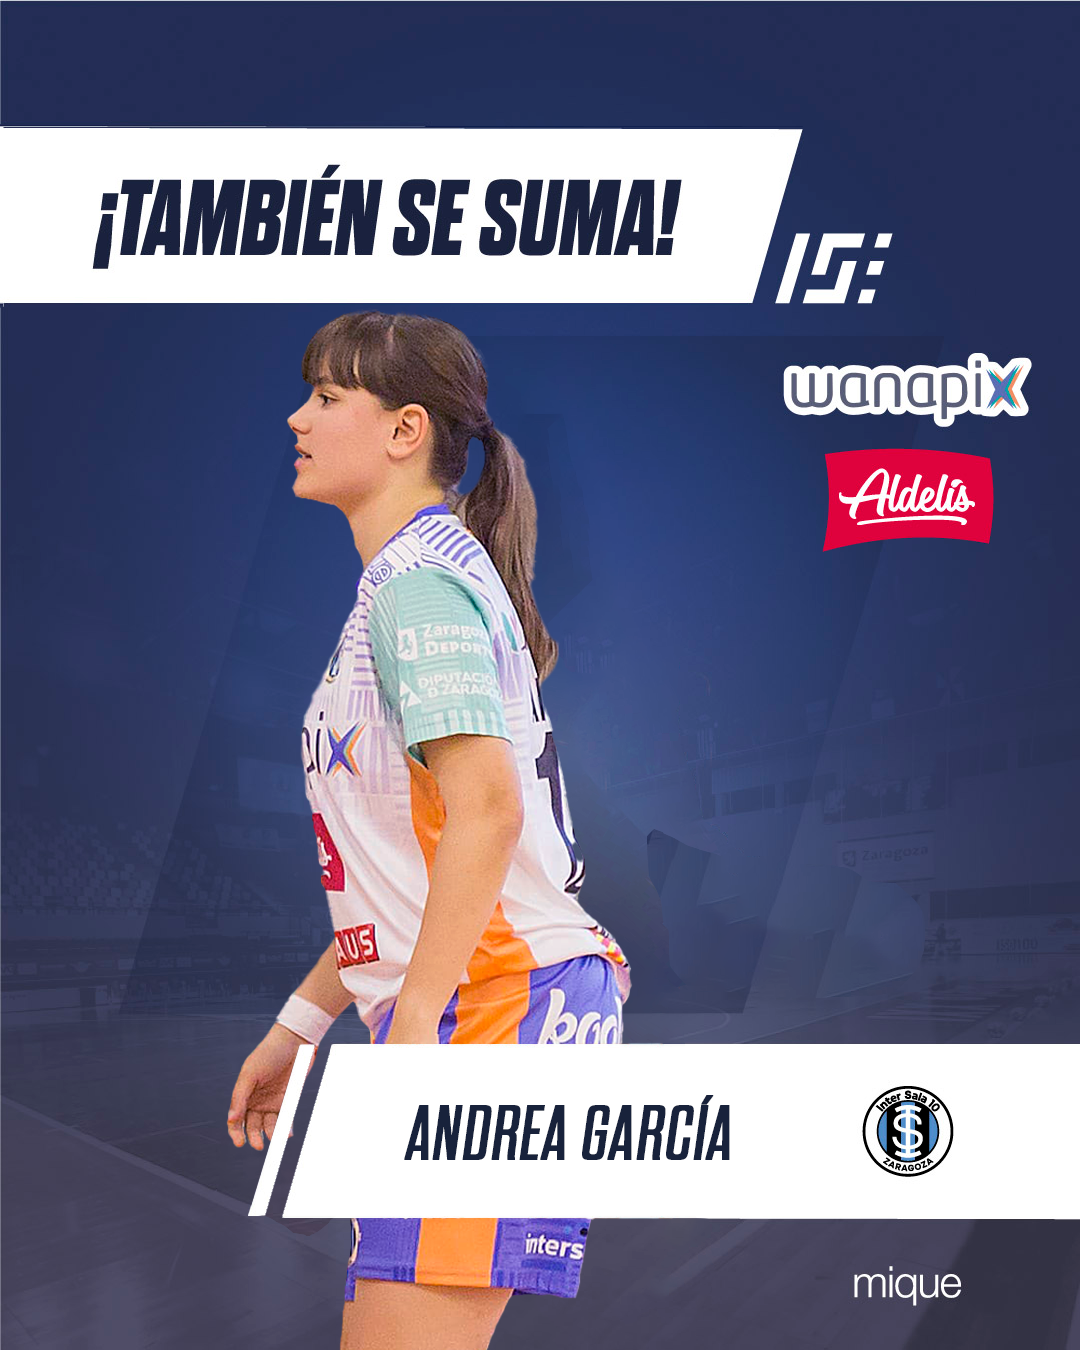 Andrea García renueva con Wanapix Aldelís InterSala 10 para la temporada 24-25